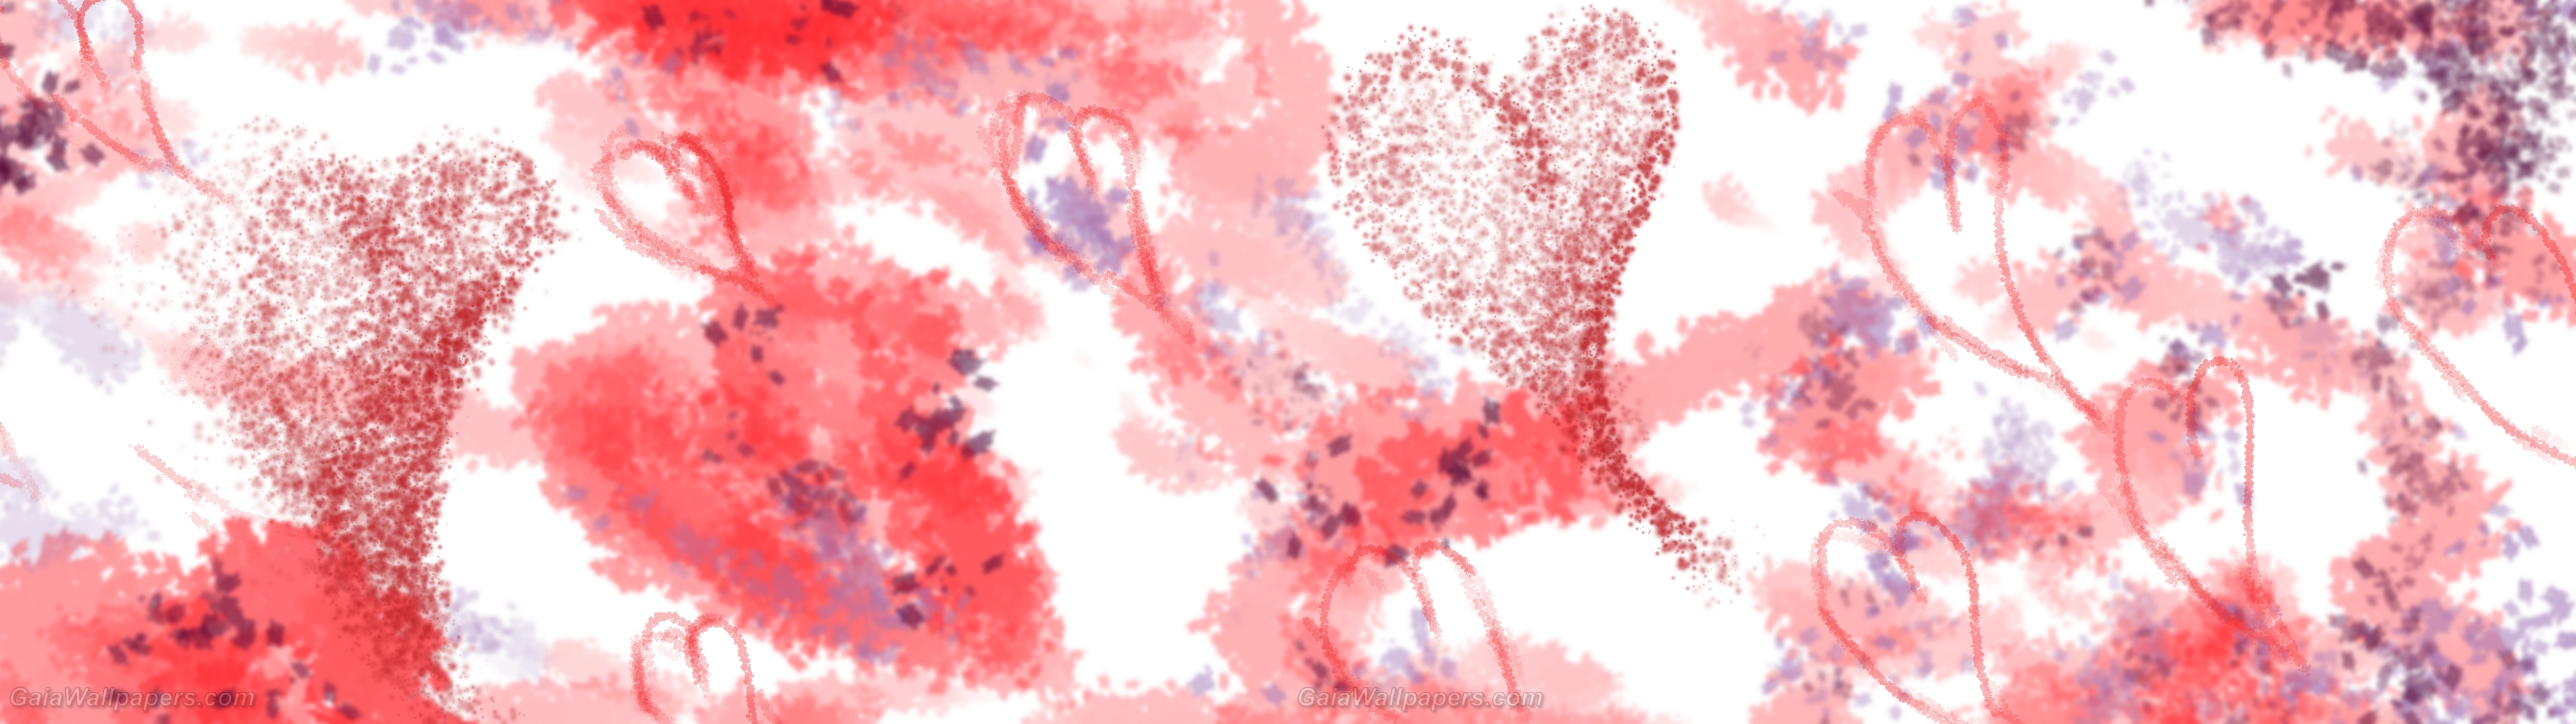 Aquarelle abstraite de Saint-Valentin - Fonds d'écran gratuits